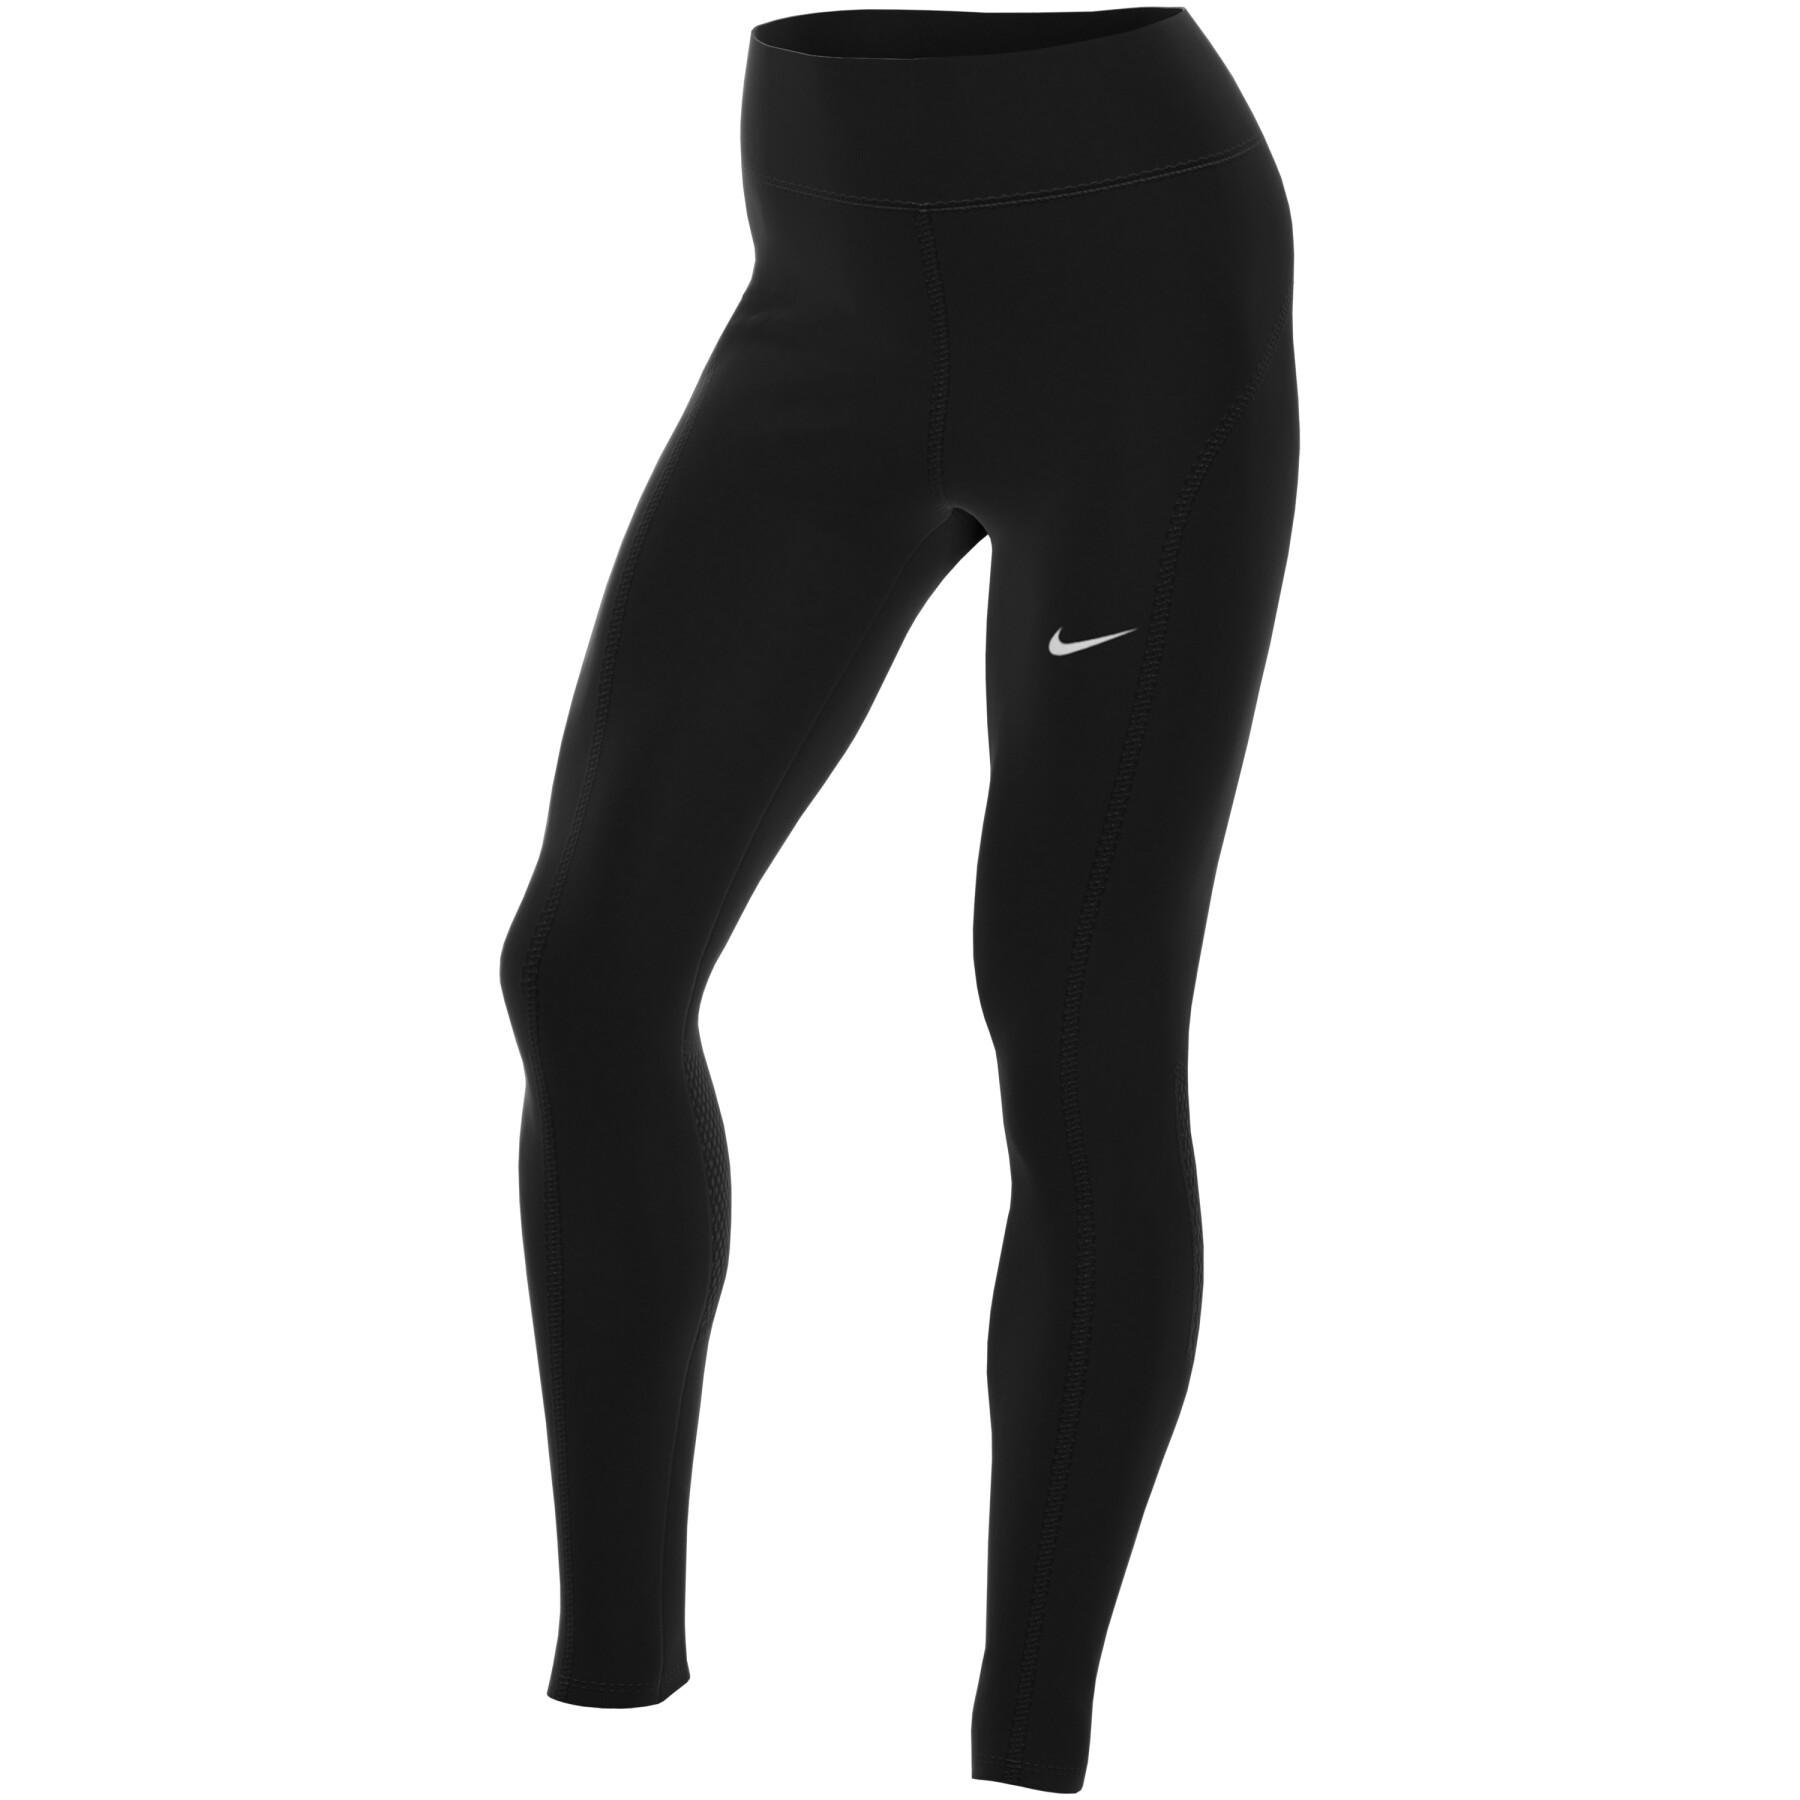 Calça Legging Nike Dri-Fit Air Fast - Feminina em Promoção